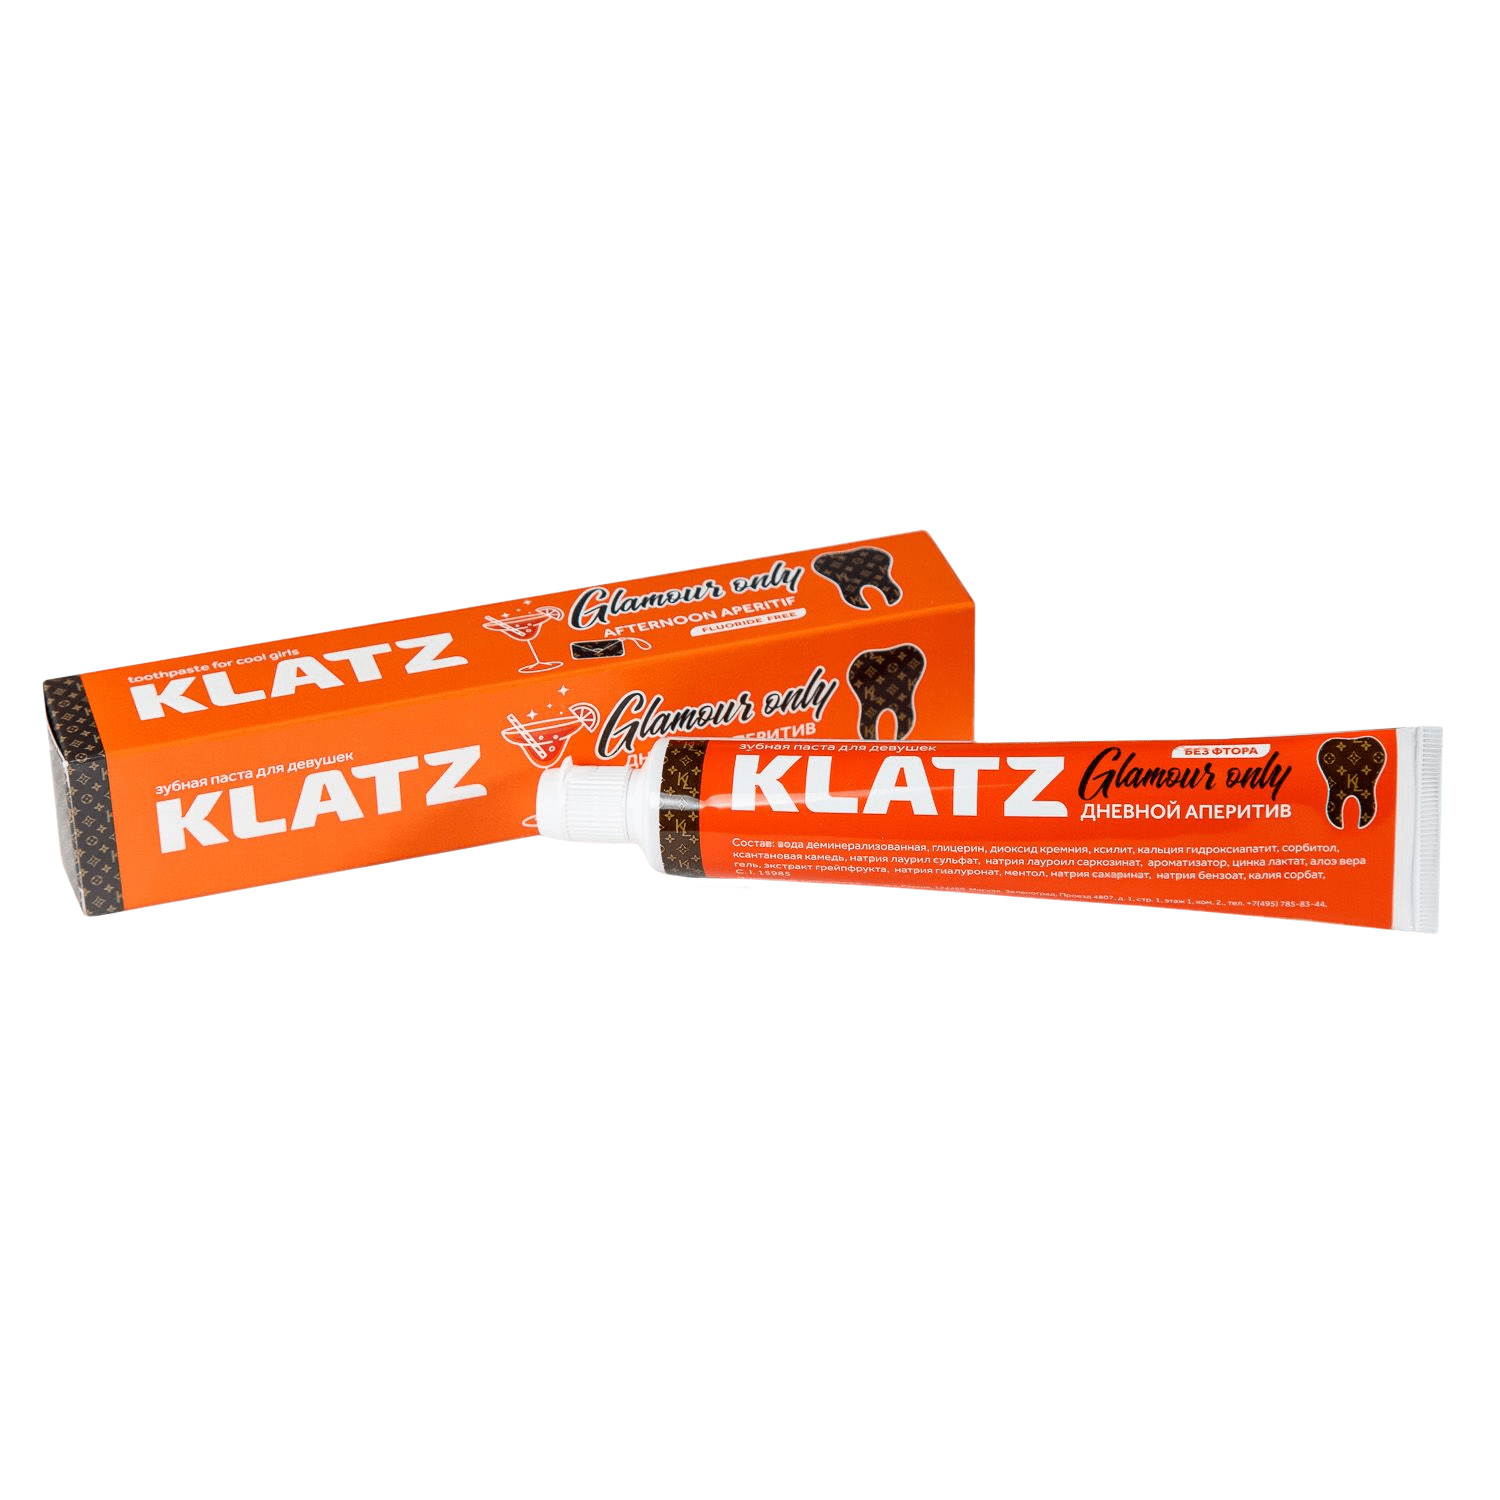 Klatz Зубная паста для девушек Дневной аперитив, 75 мл (Klatz, Glamour Only) зубная паста klatz glamour only 75 мл 3 шт